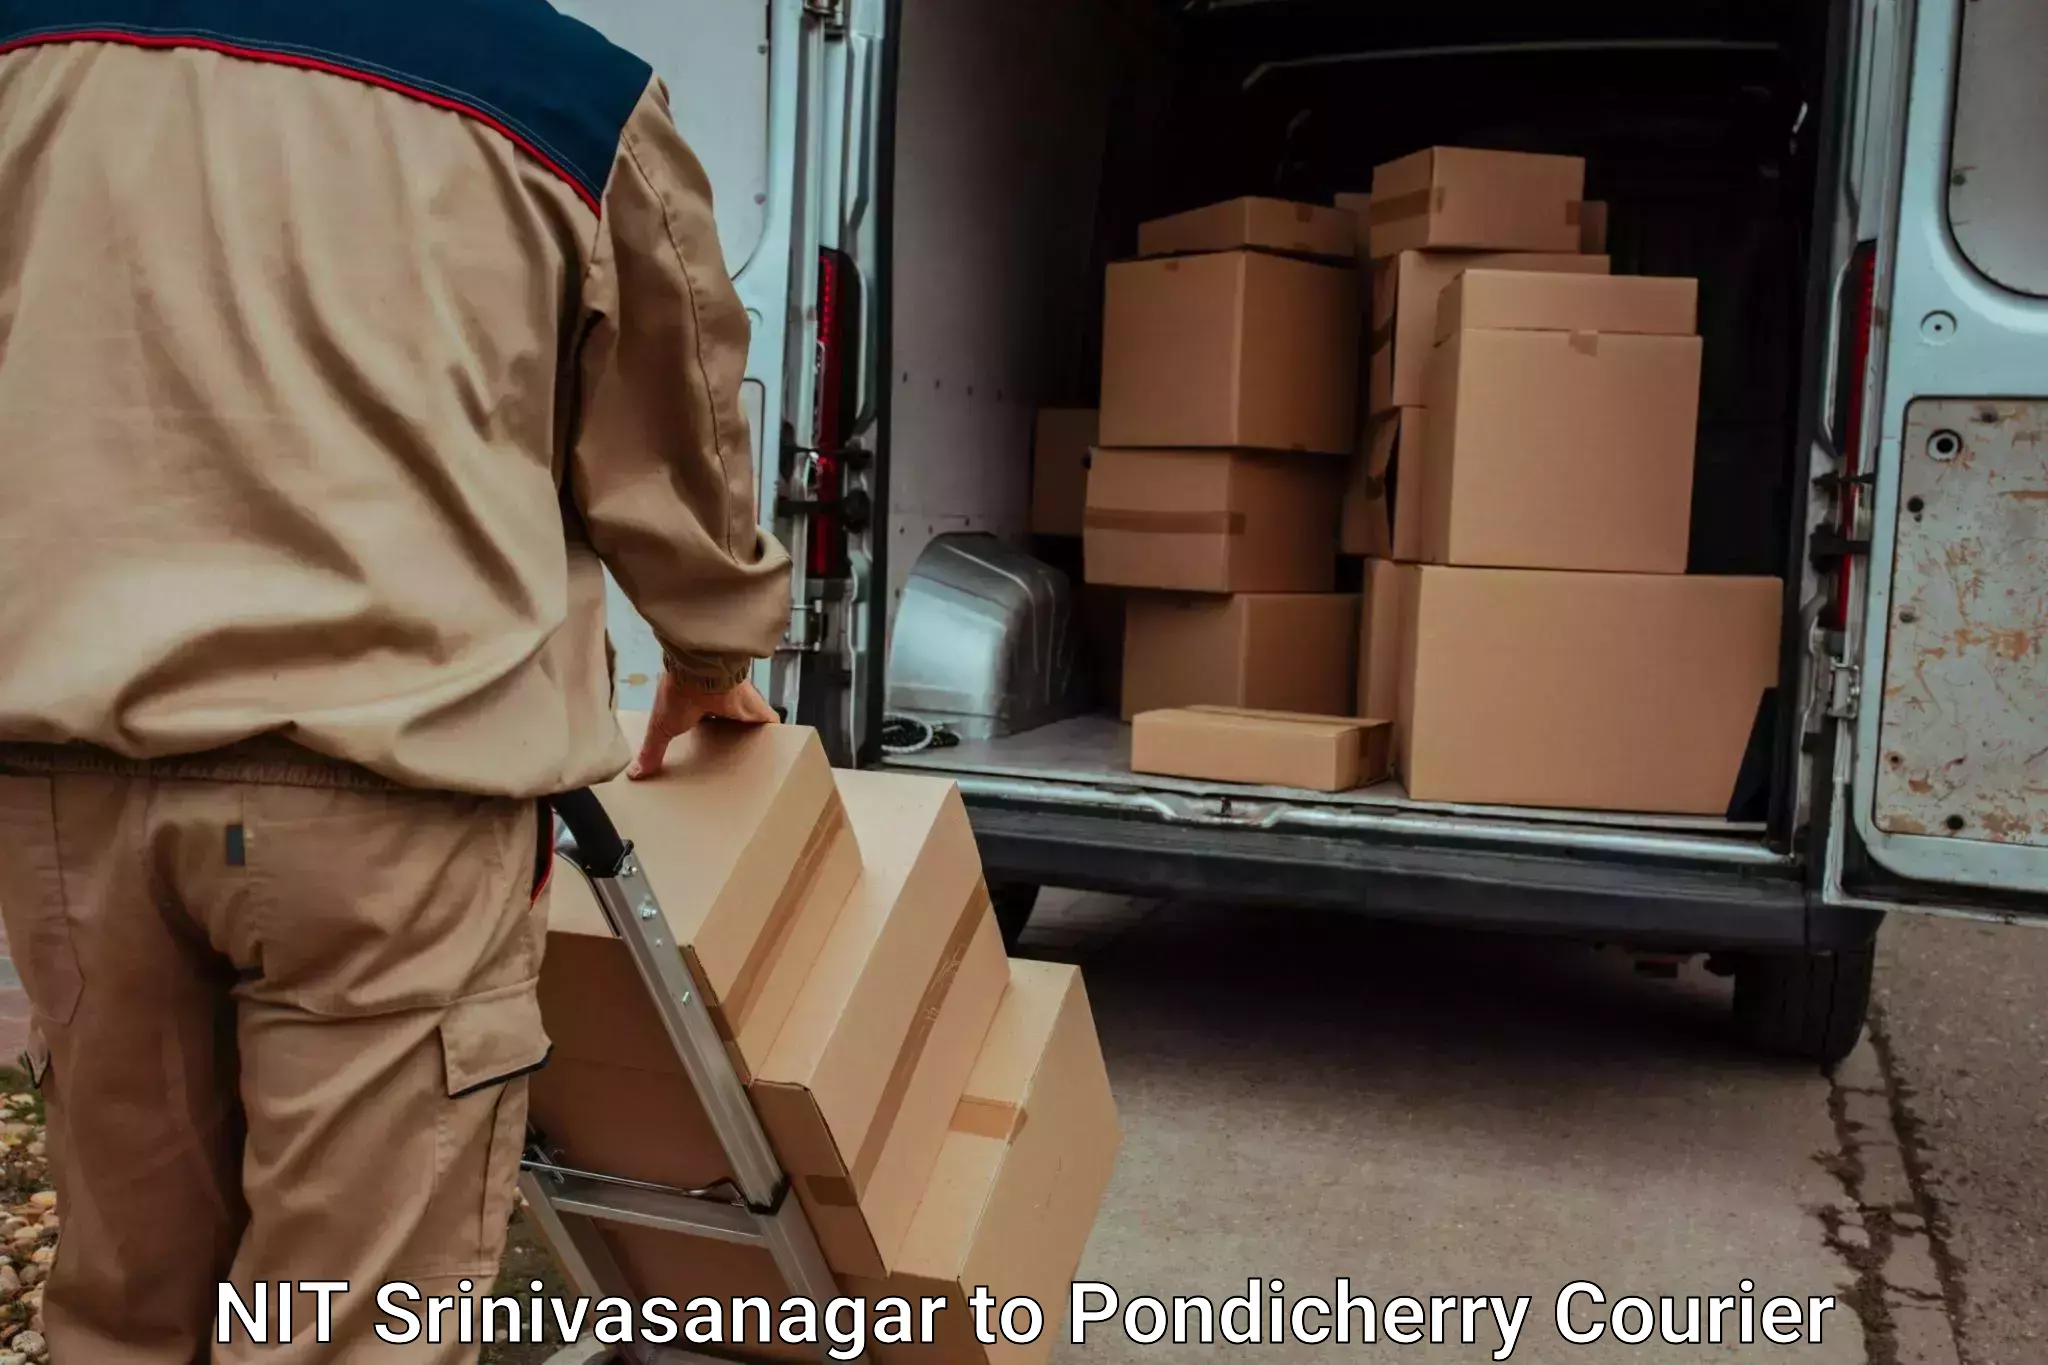 Luggage courier network NIT Srinivasanagar to Pondicherry